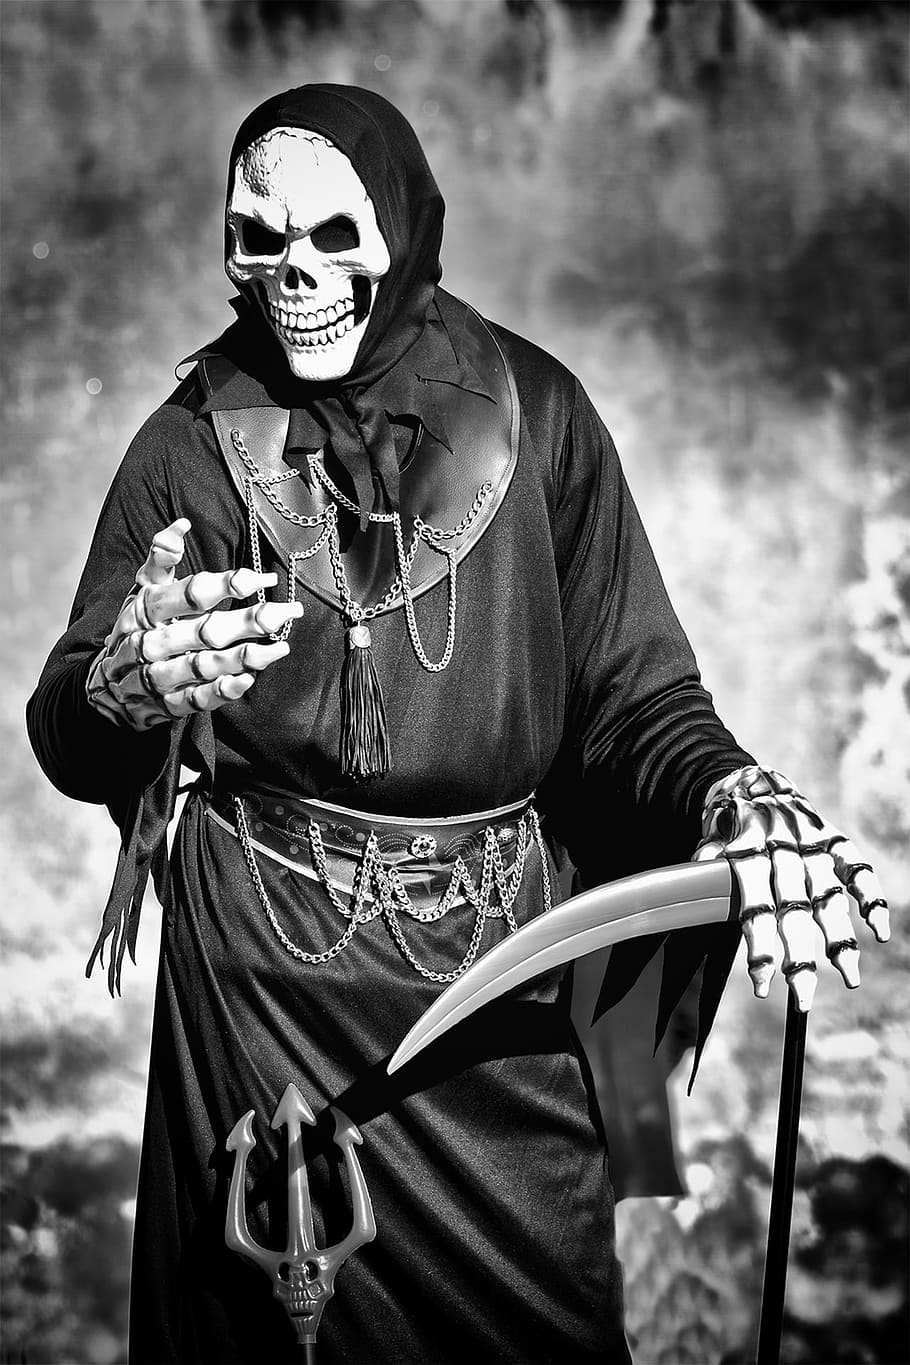 costume, death, morals, masks, mask, disguise, scythe, skeleton, skull, man